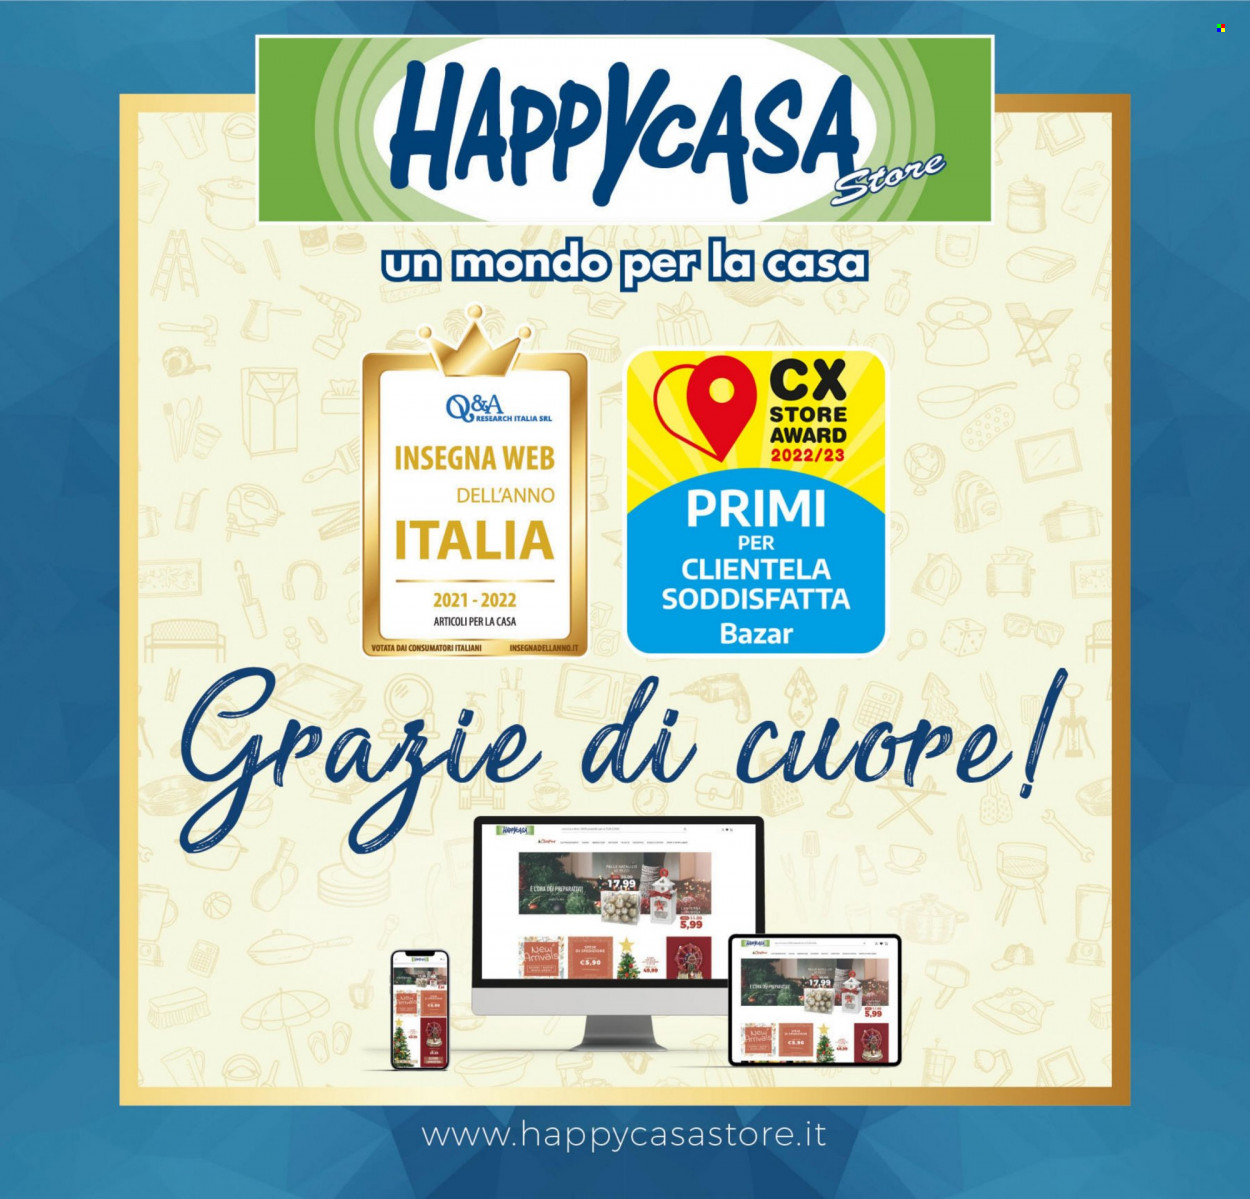 Volantino Happy Casa Store - 21.9.2022 - 6.10.2022.